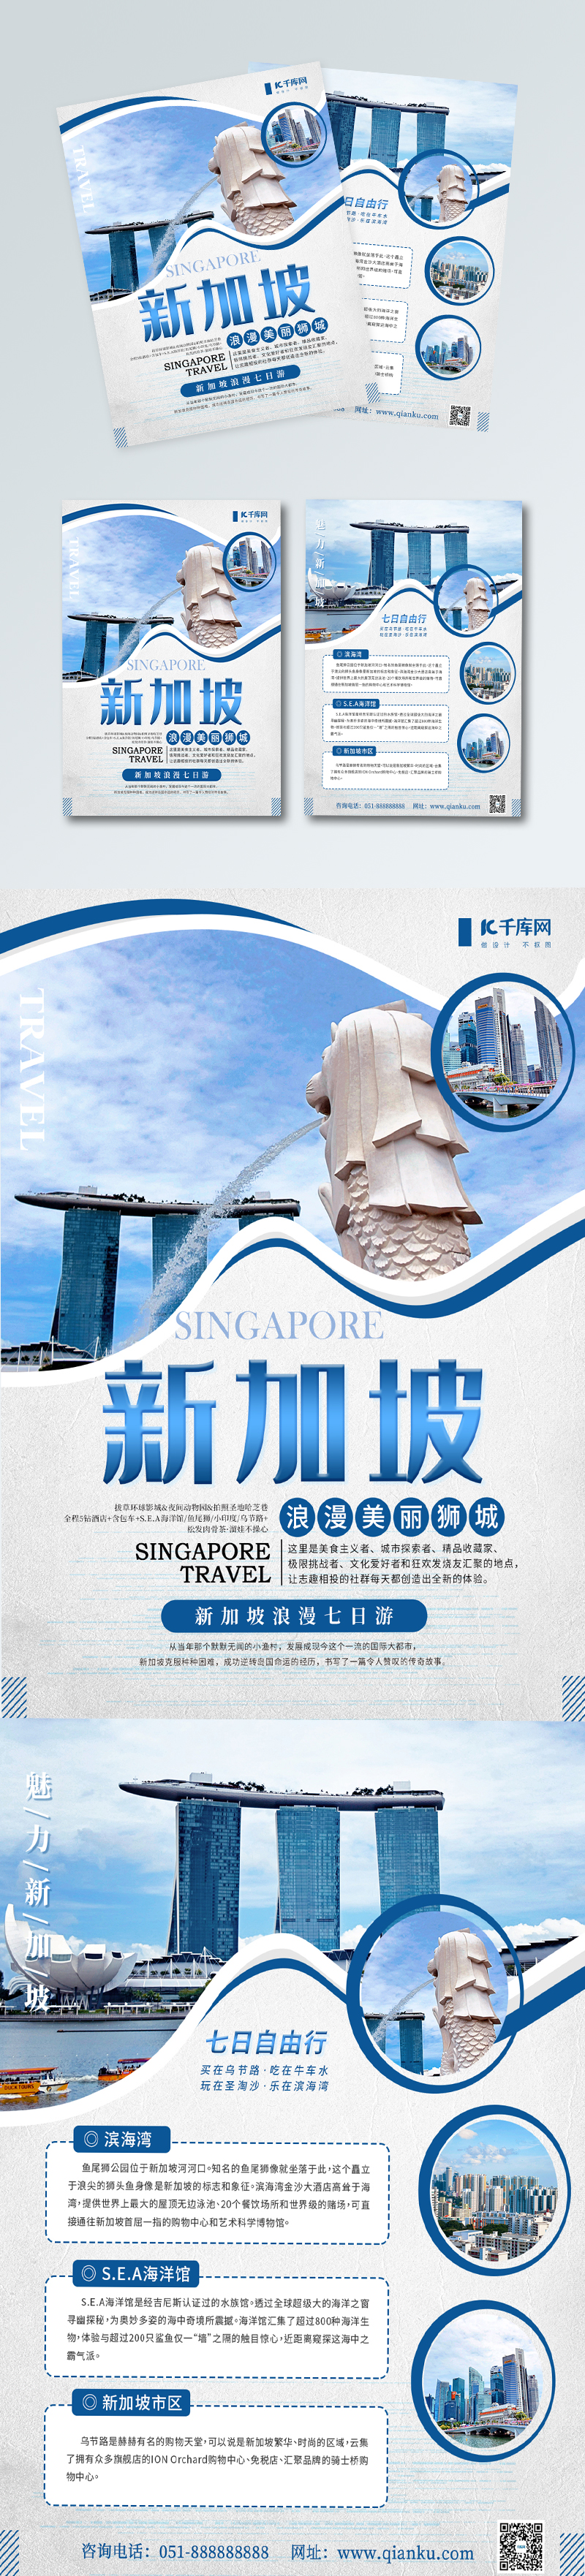 新加坡境外游旅游宣传单图片